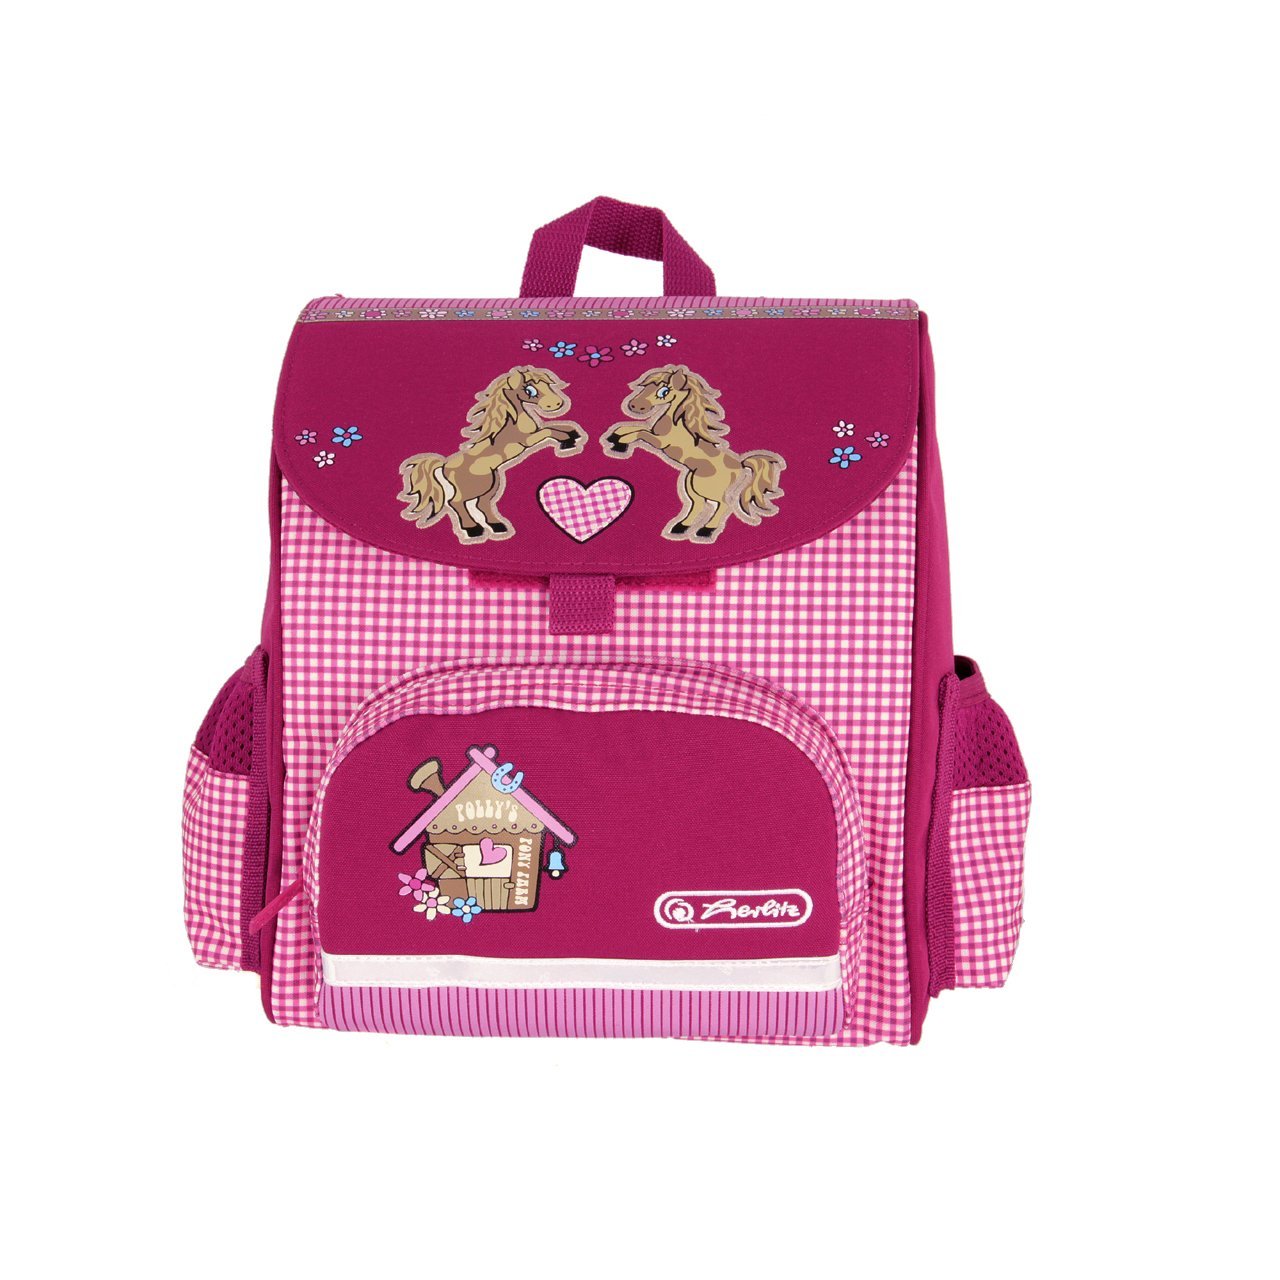 Ранец дошкольный Mini Softbag - Pony Farm, без наполнения  